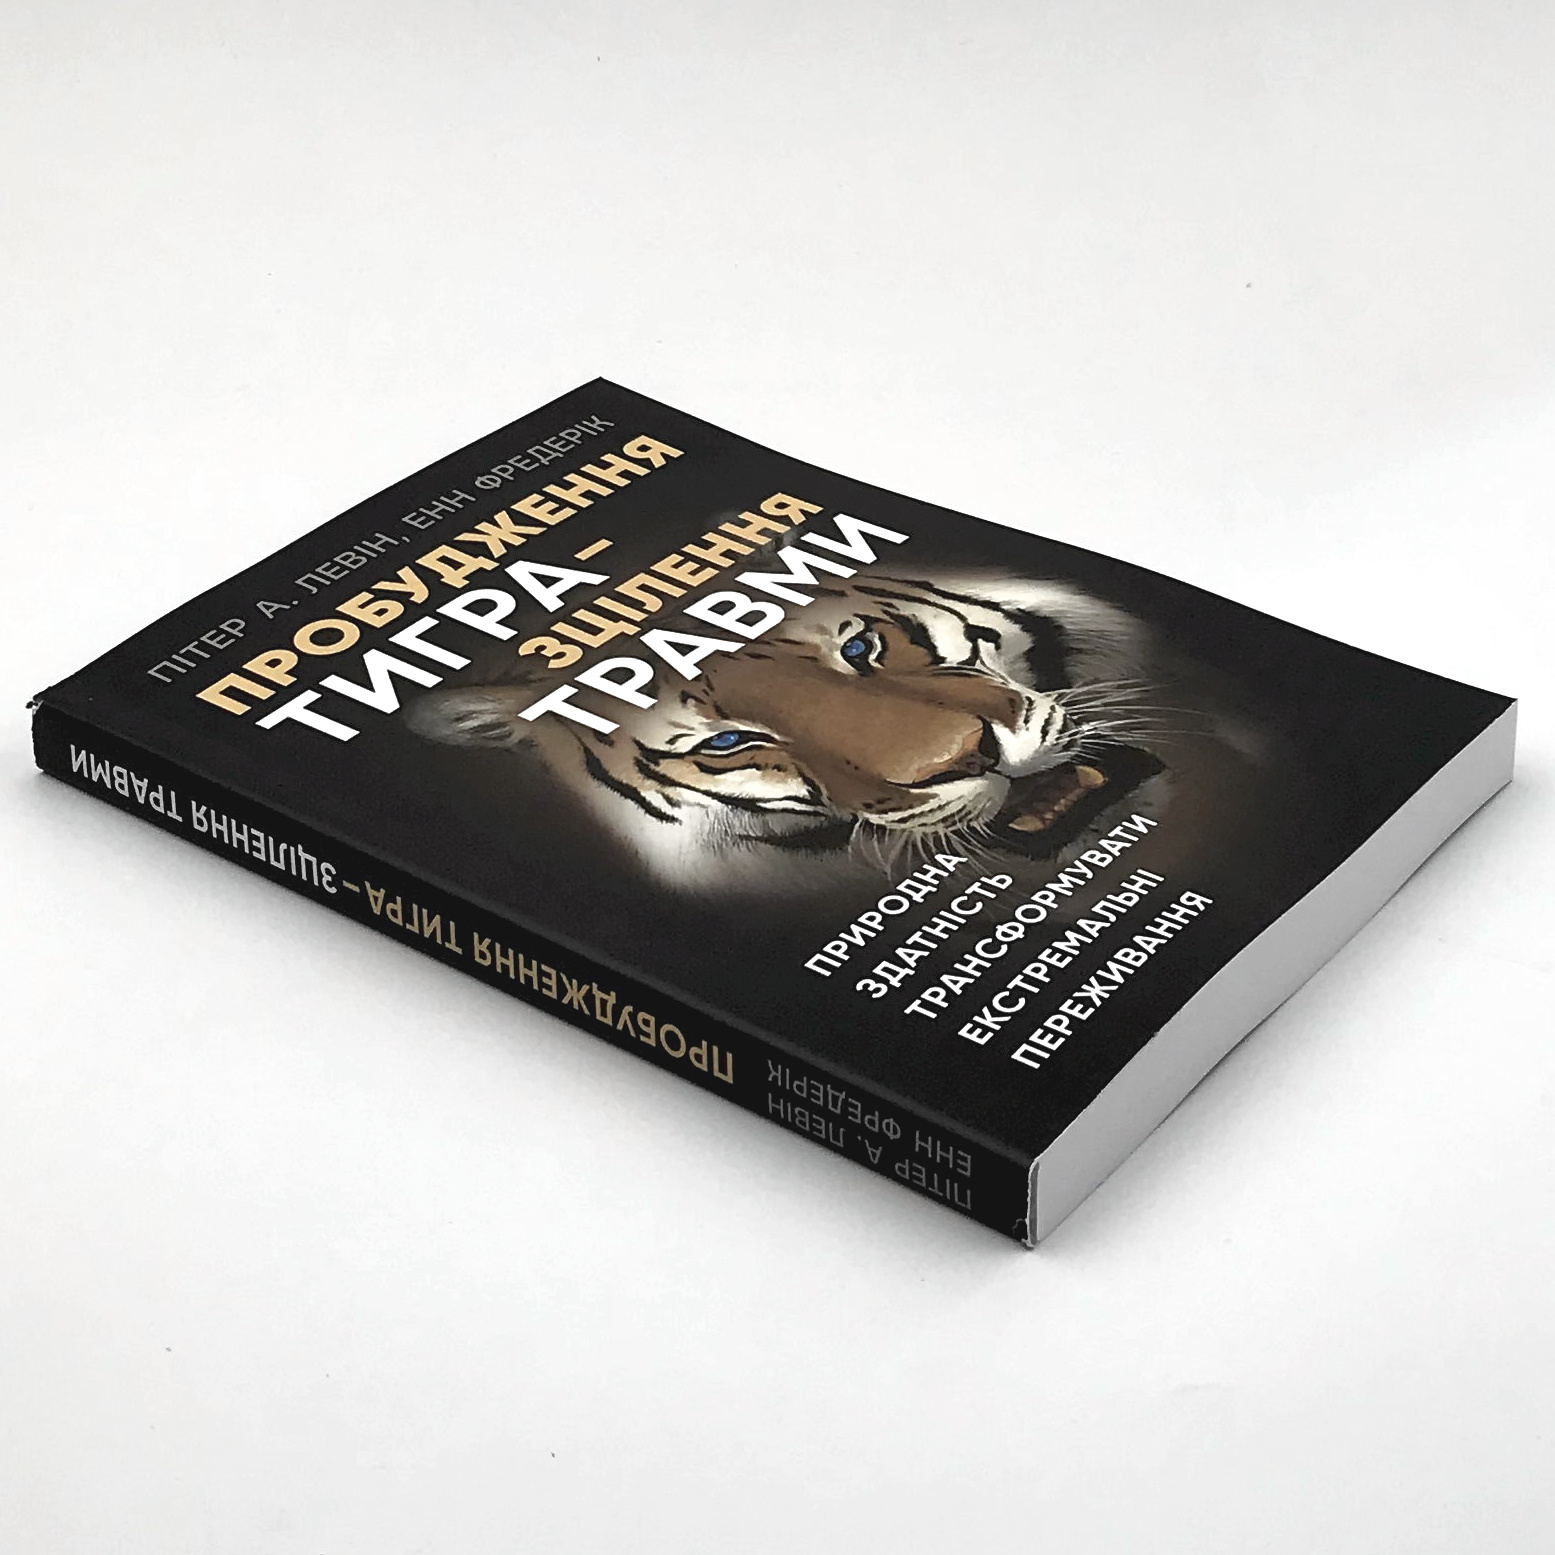 Пробудження тигра – зцілення травми. Природна здатність трансформувати екстремальні переживання. Автор — Енн Фредерік, Пітер Левін. 